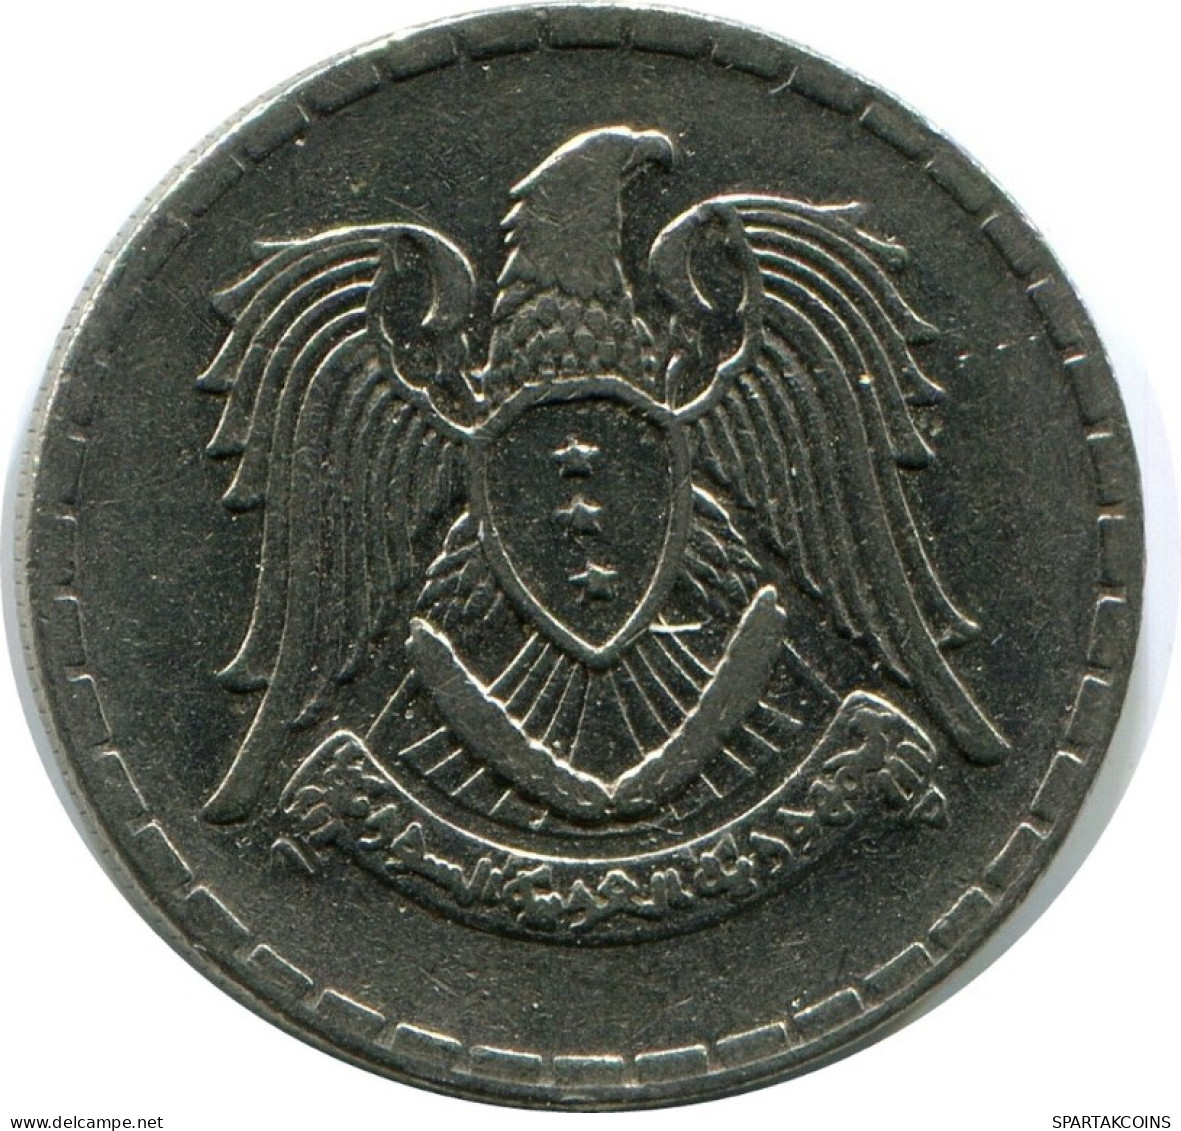 25 QIRSH 1968 SIRIA SYRIA Islámico Moneda #AK300.E.A - Siria